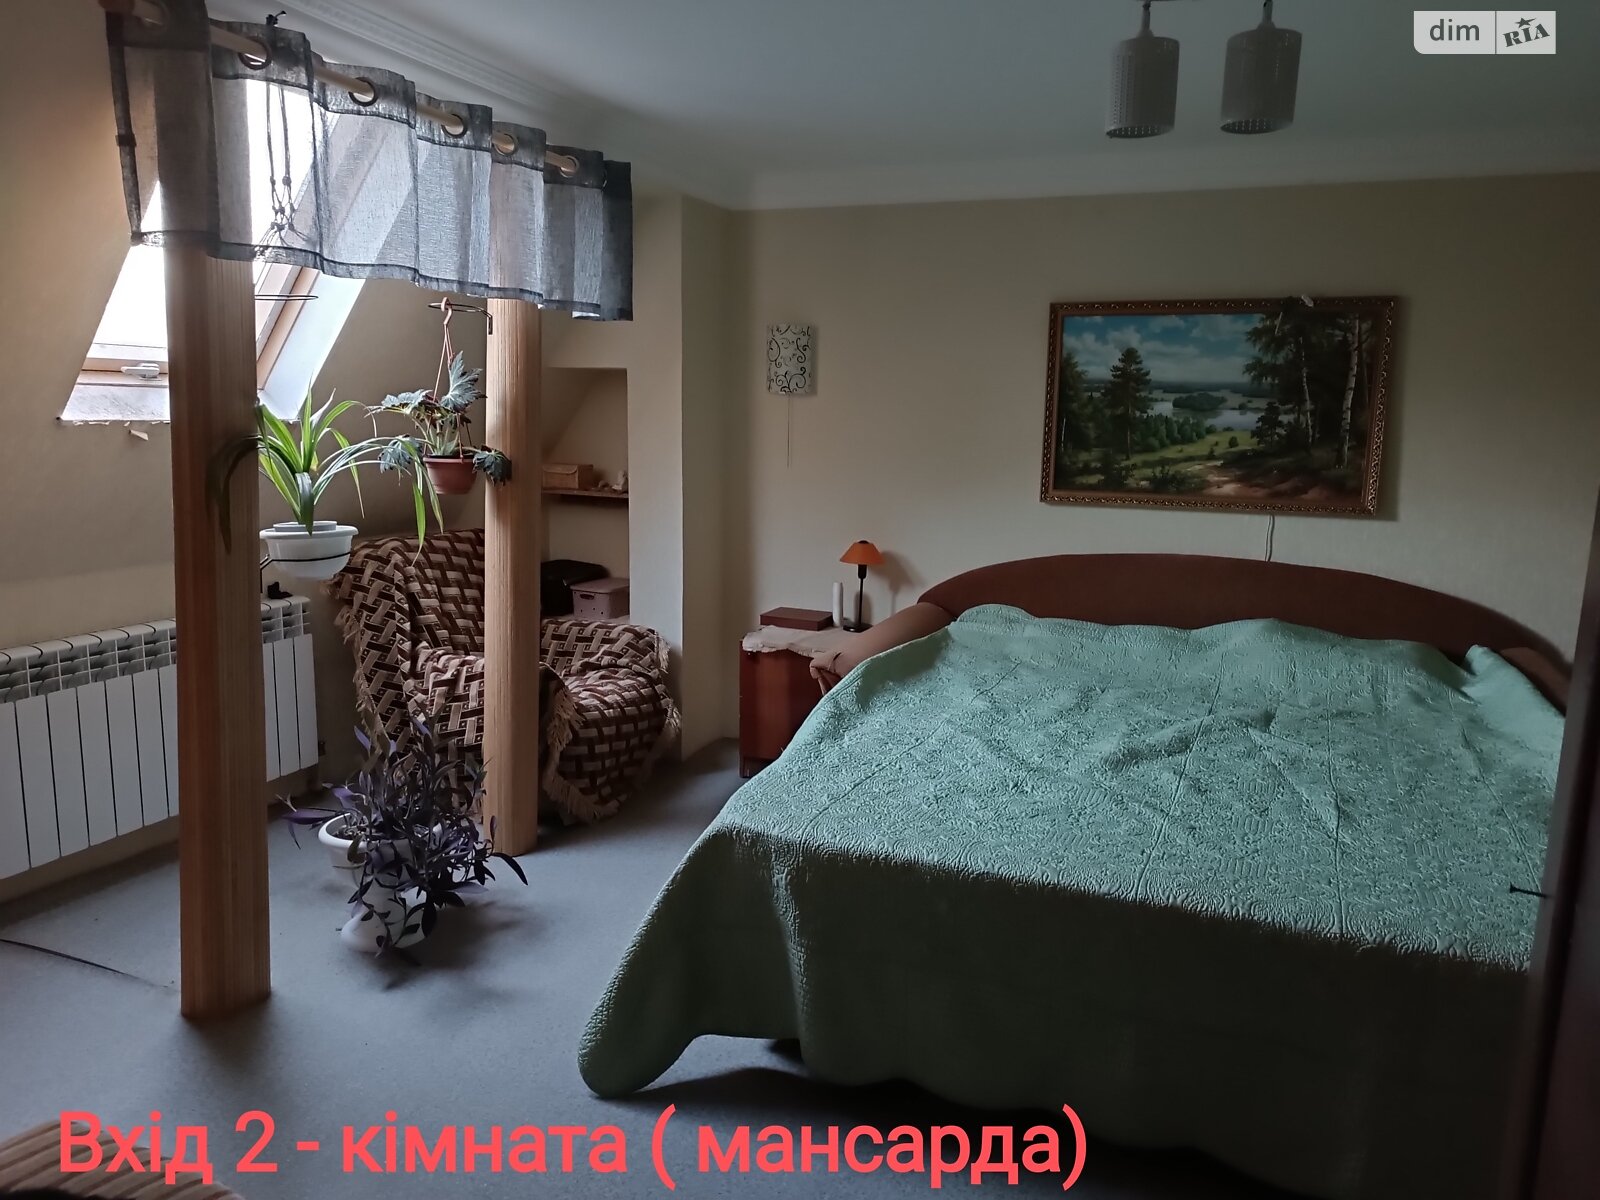 Продаж частини будинку в Києві, район Дарницький, 5 кімнат фото 1